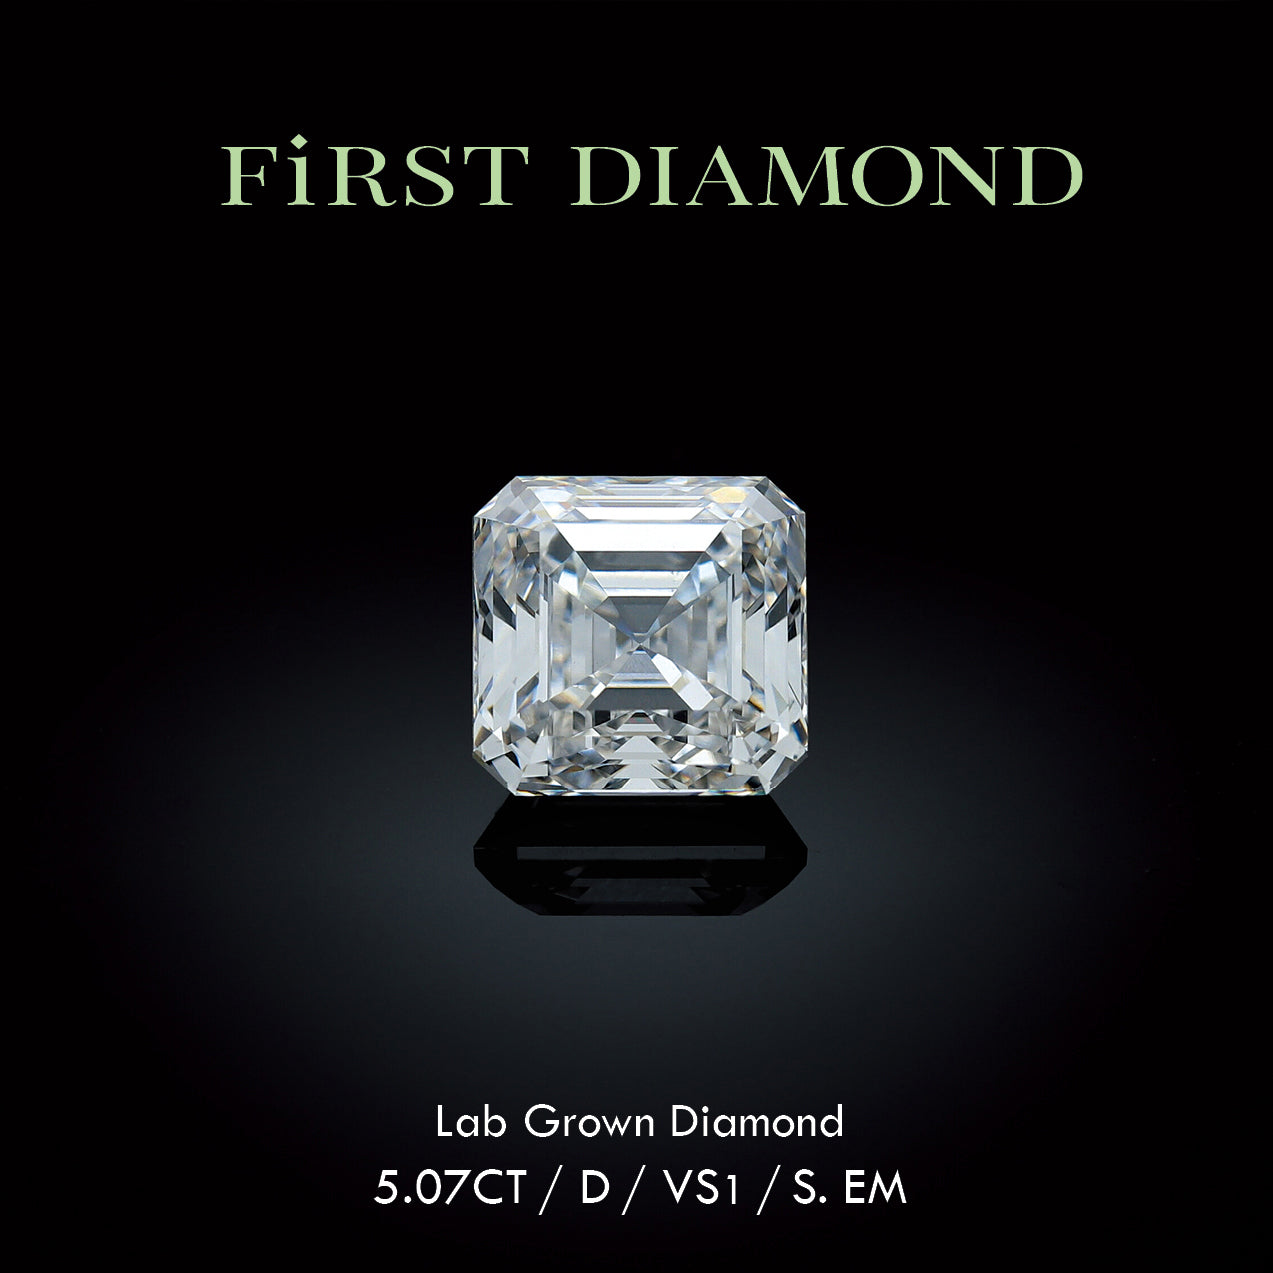 [서울경제] 랩그로운 다이아몬드 브랜드 ‘First Diamond’, 5캐럿 팬시 다이아몬드 공개